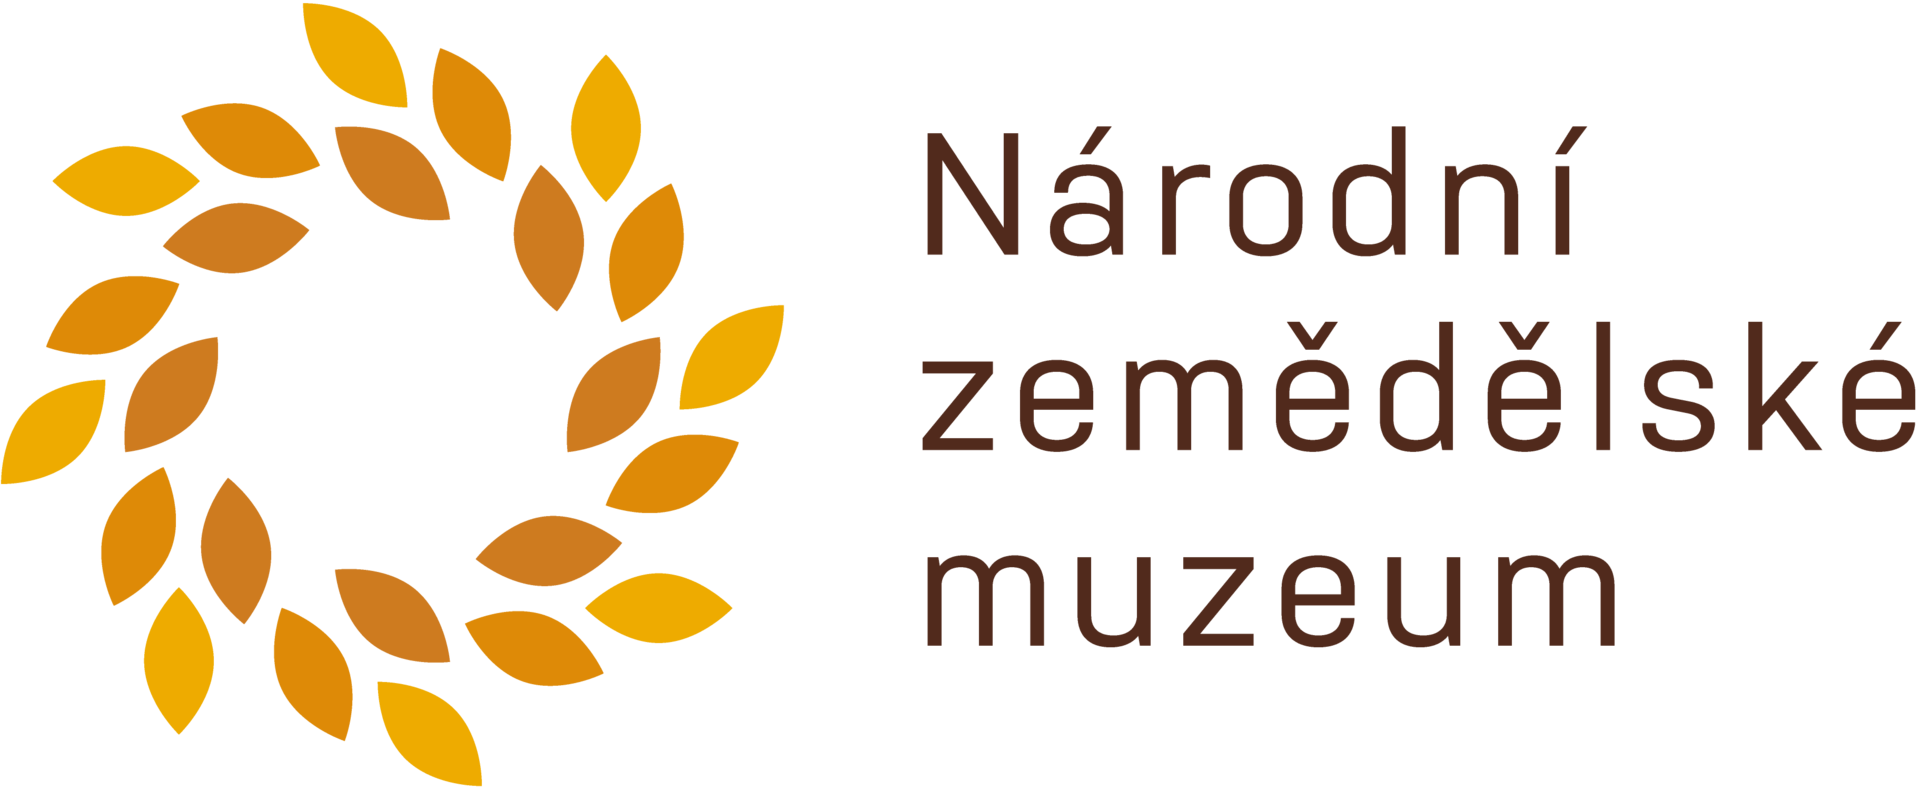 Národní zemědělské muzeum logo